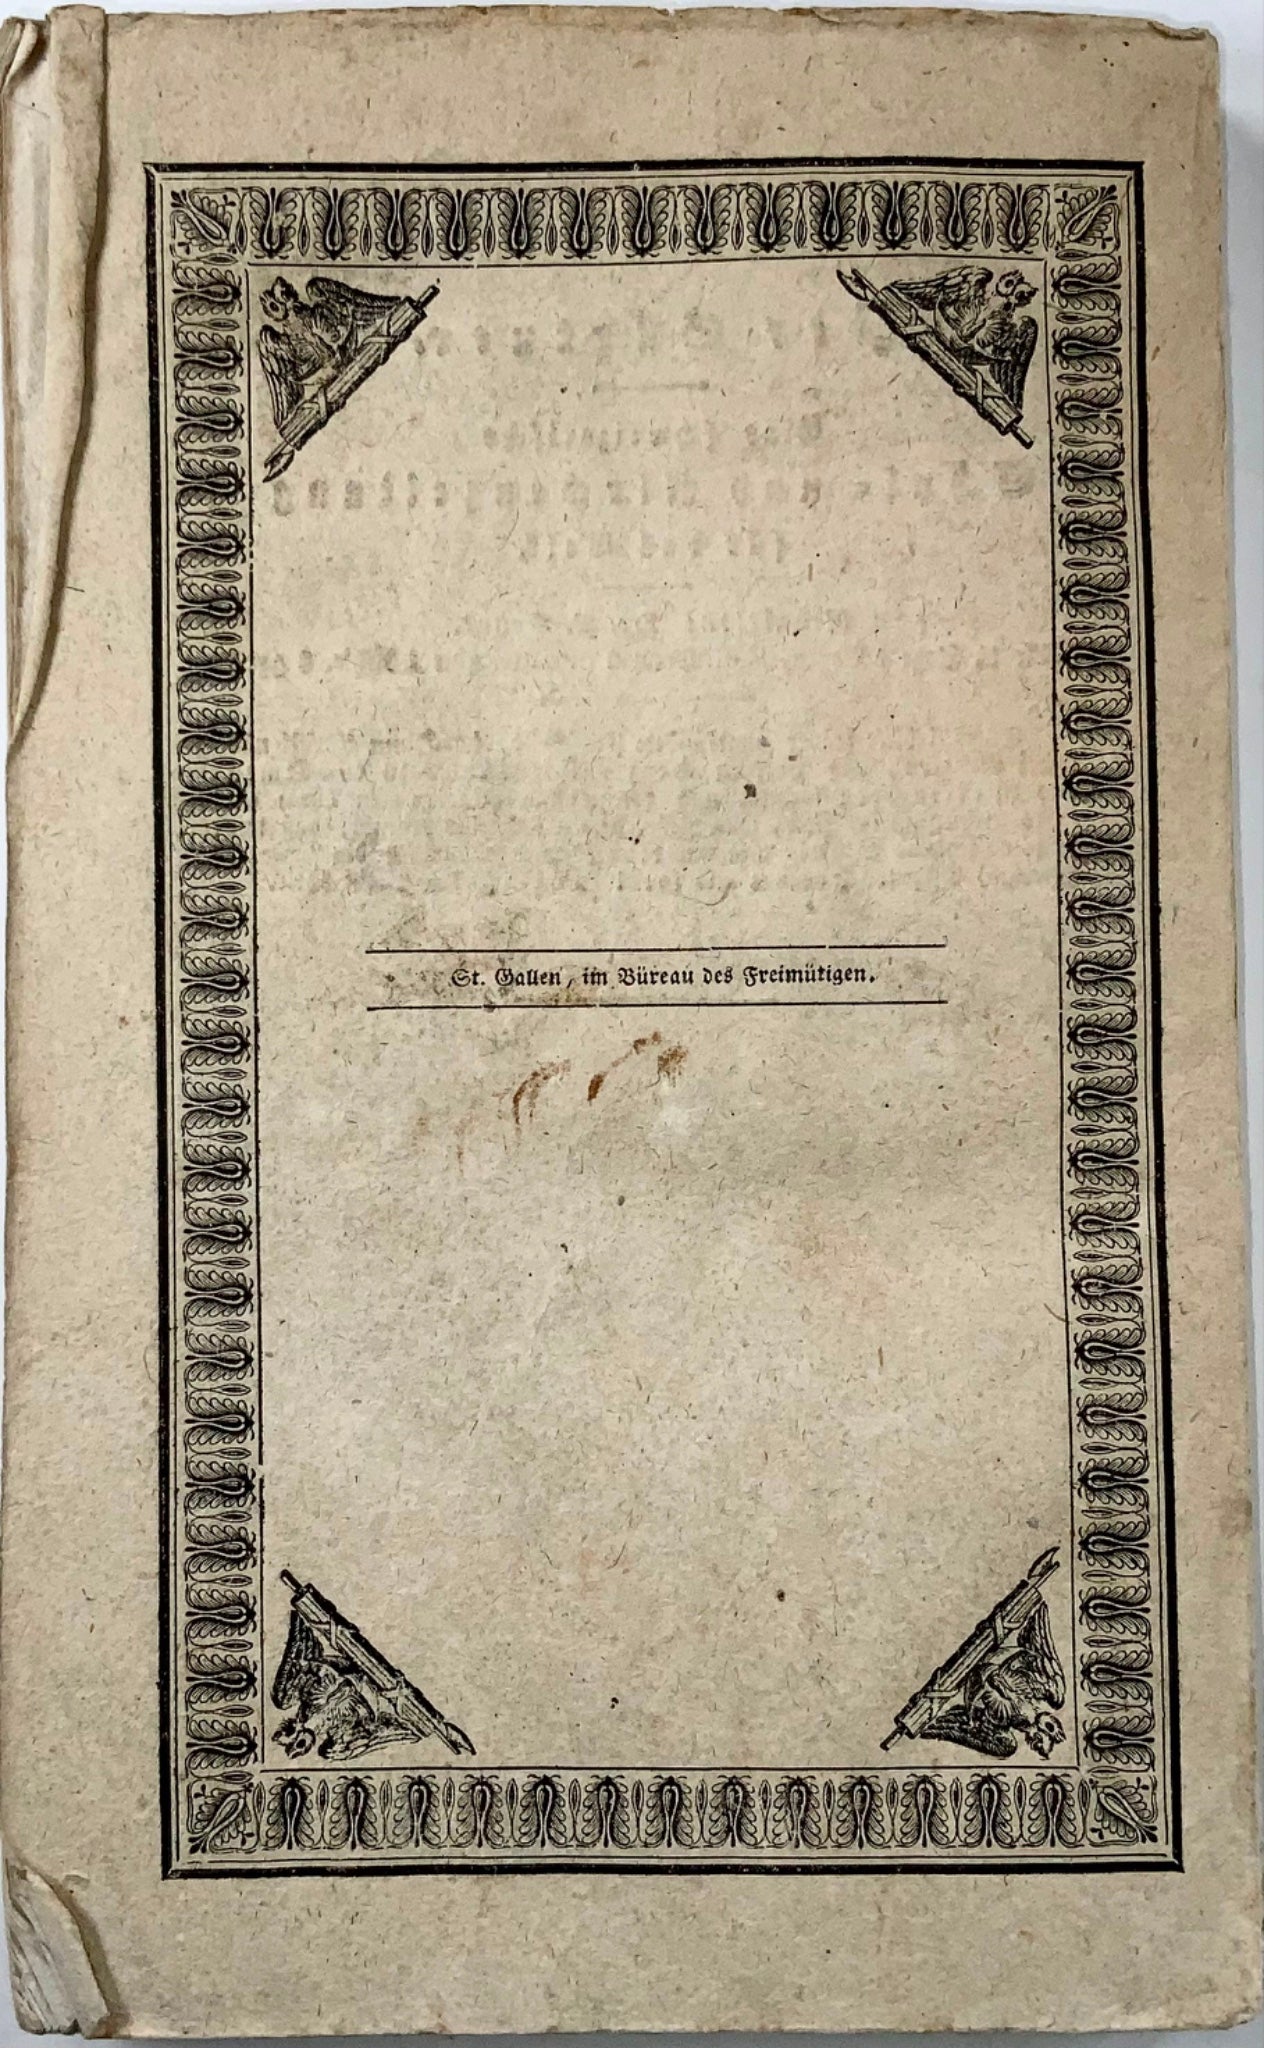 1833 Siegwart-Muller, droit pénal de la Suisse centrale, livre